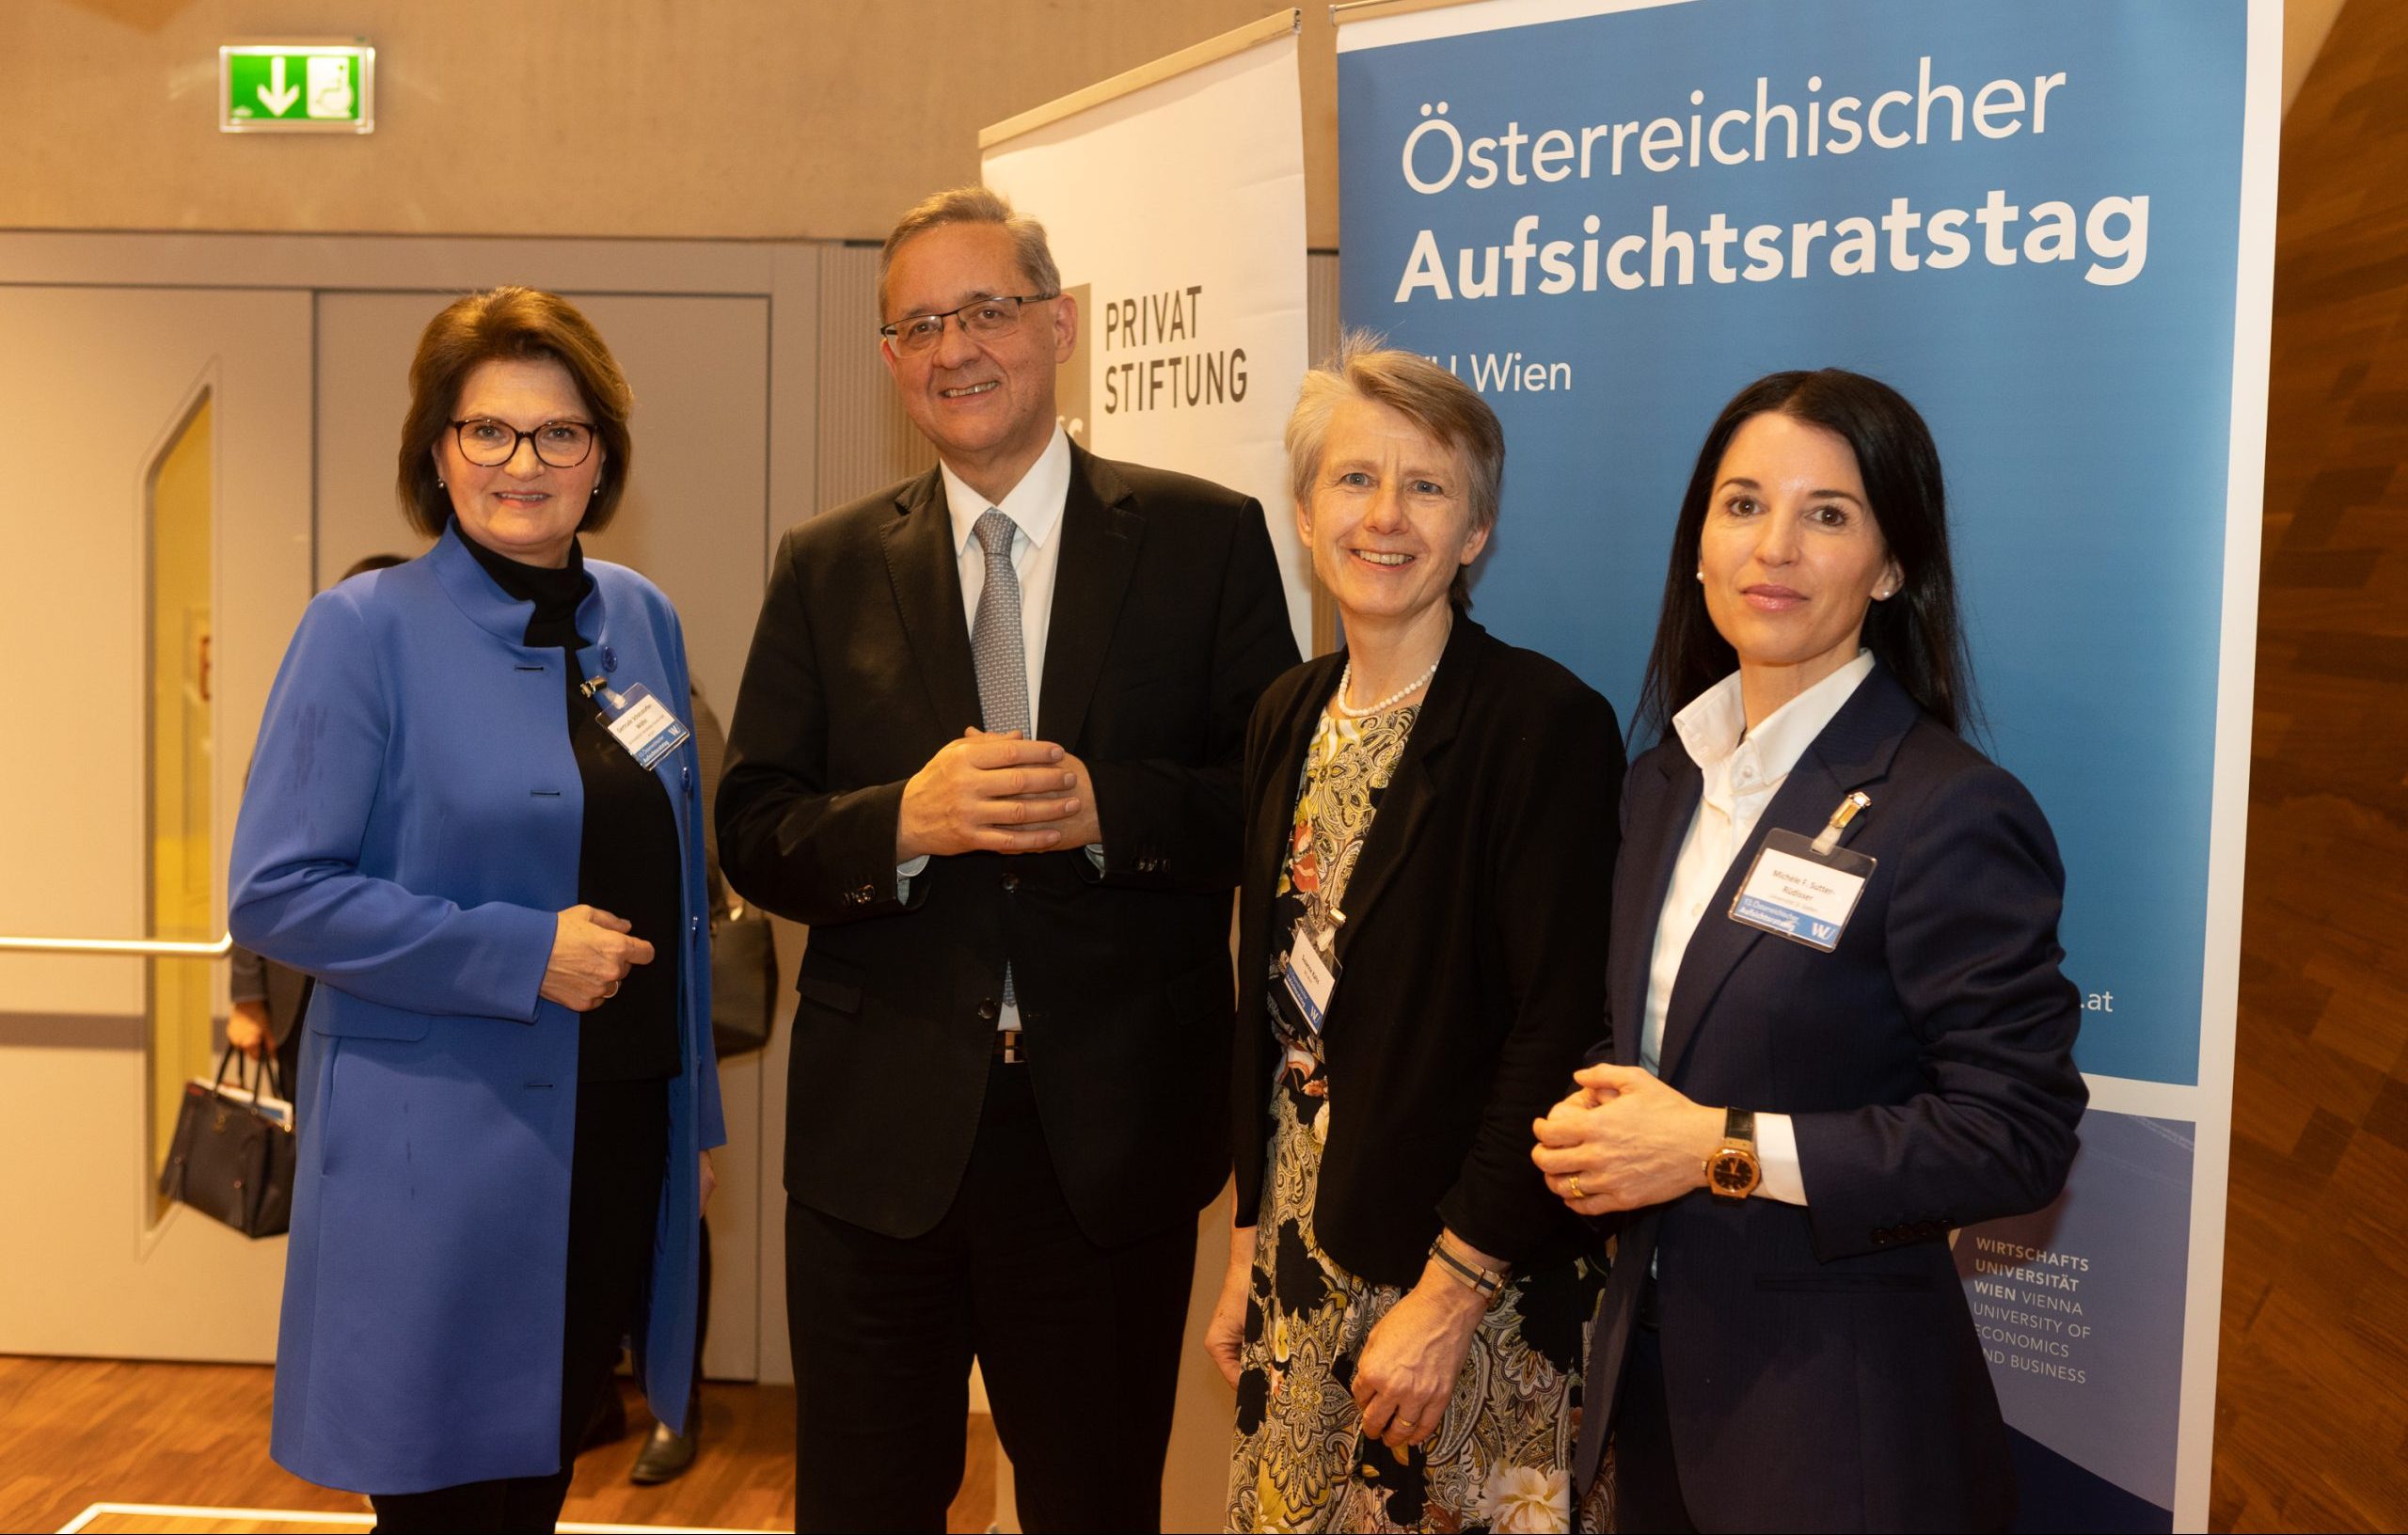 Österreichische Aufsichtsräte als Navigatoren in Krisenzeiten